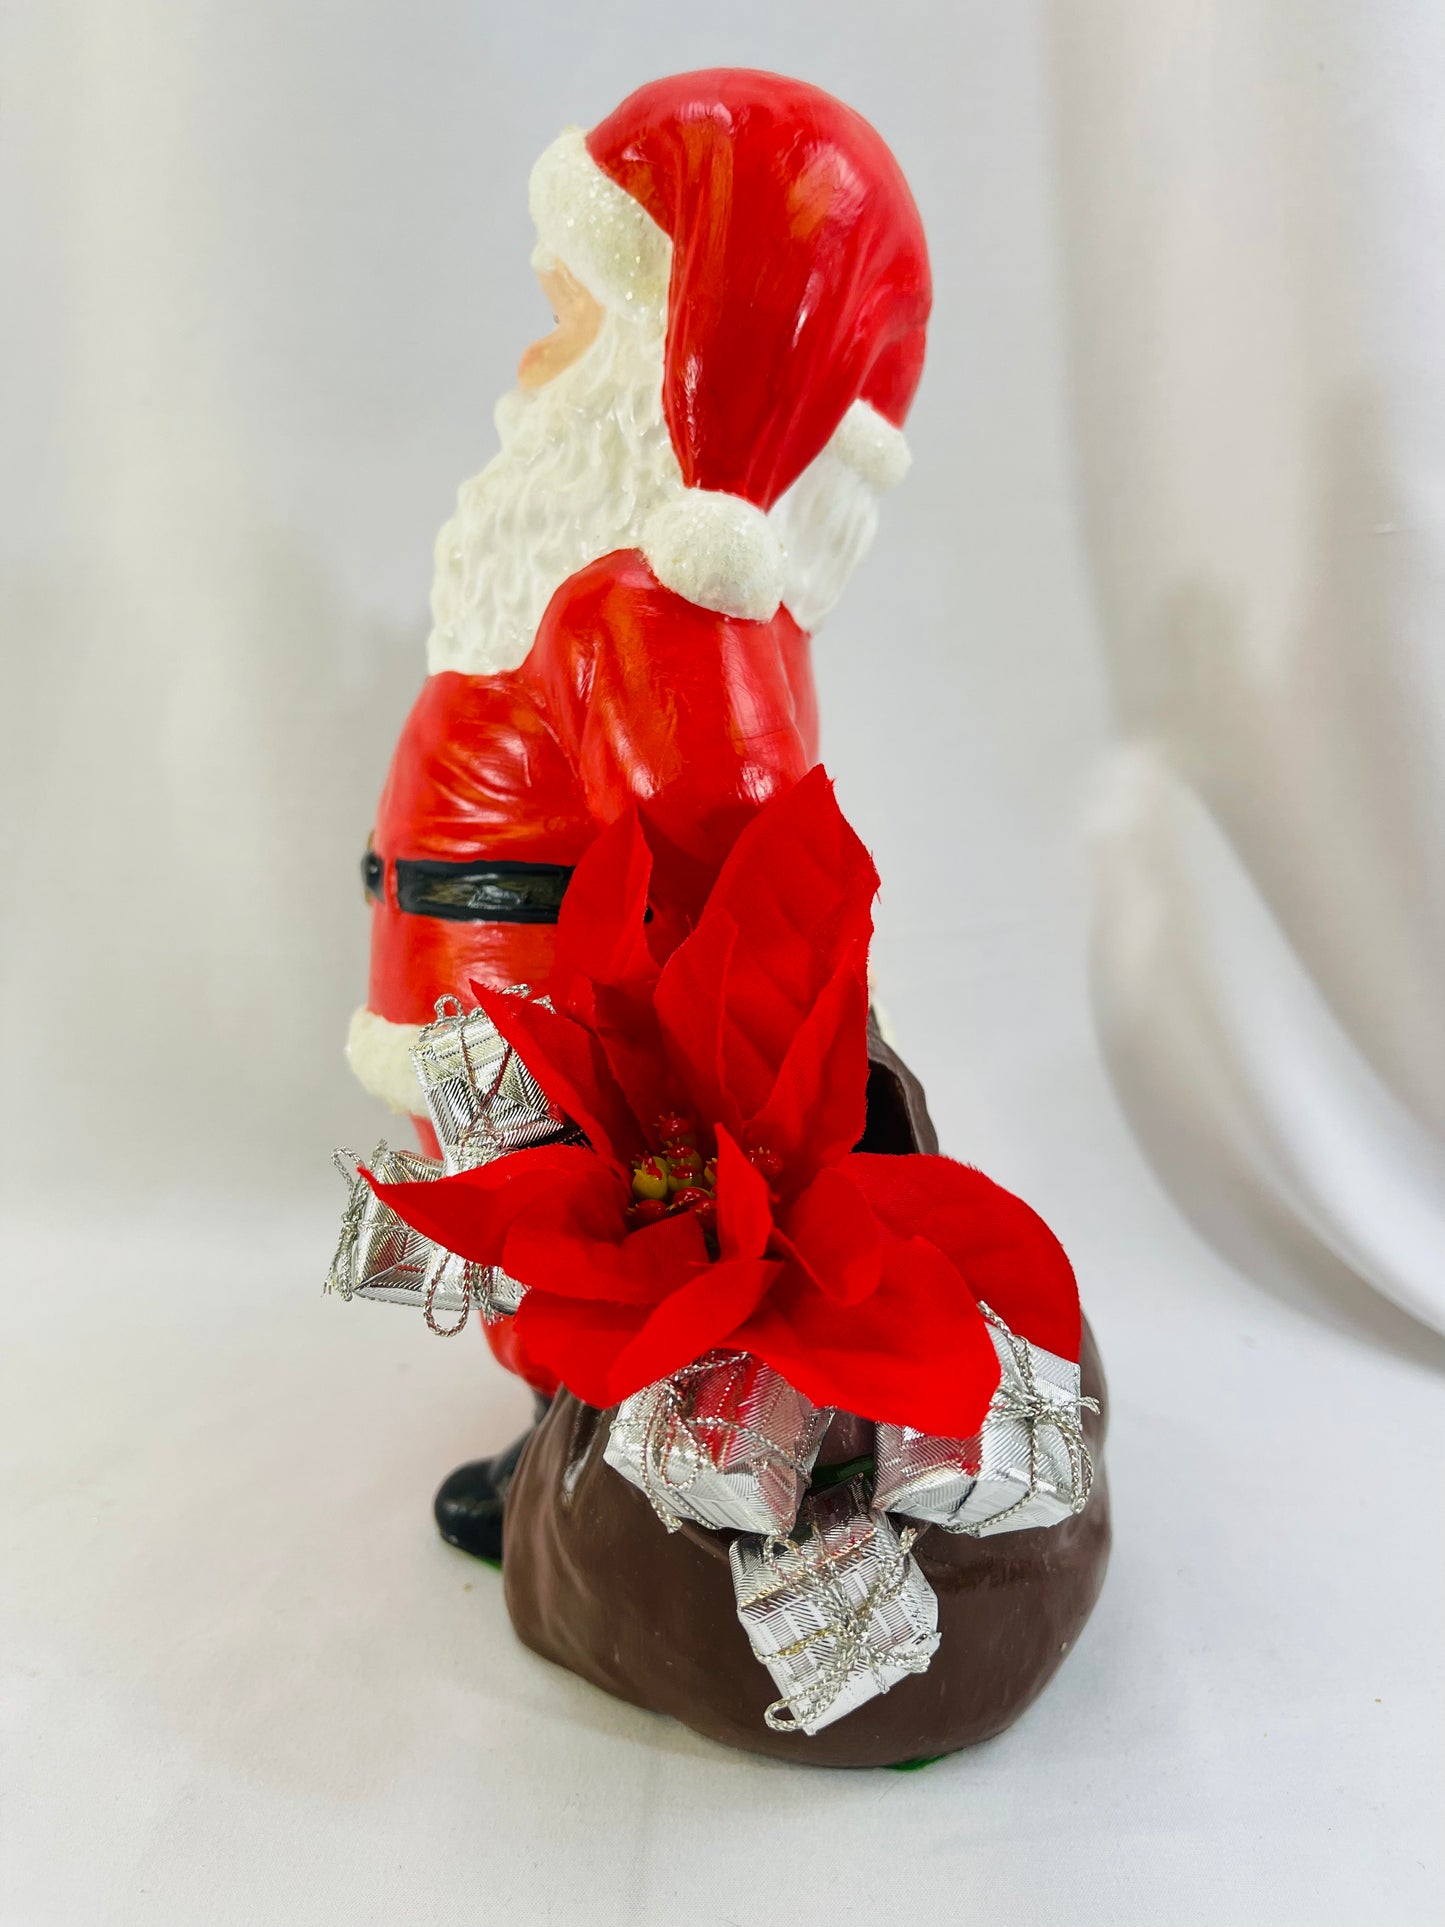 Duncan Ceramics 70s Santa Claus